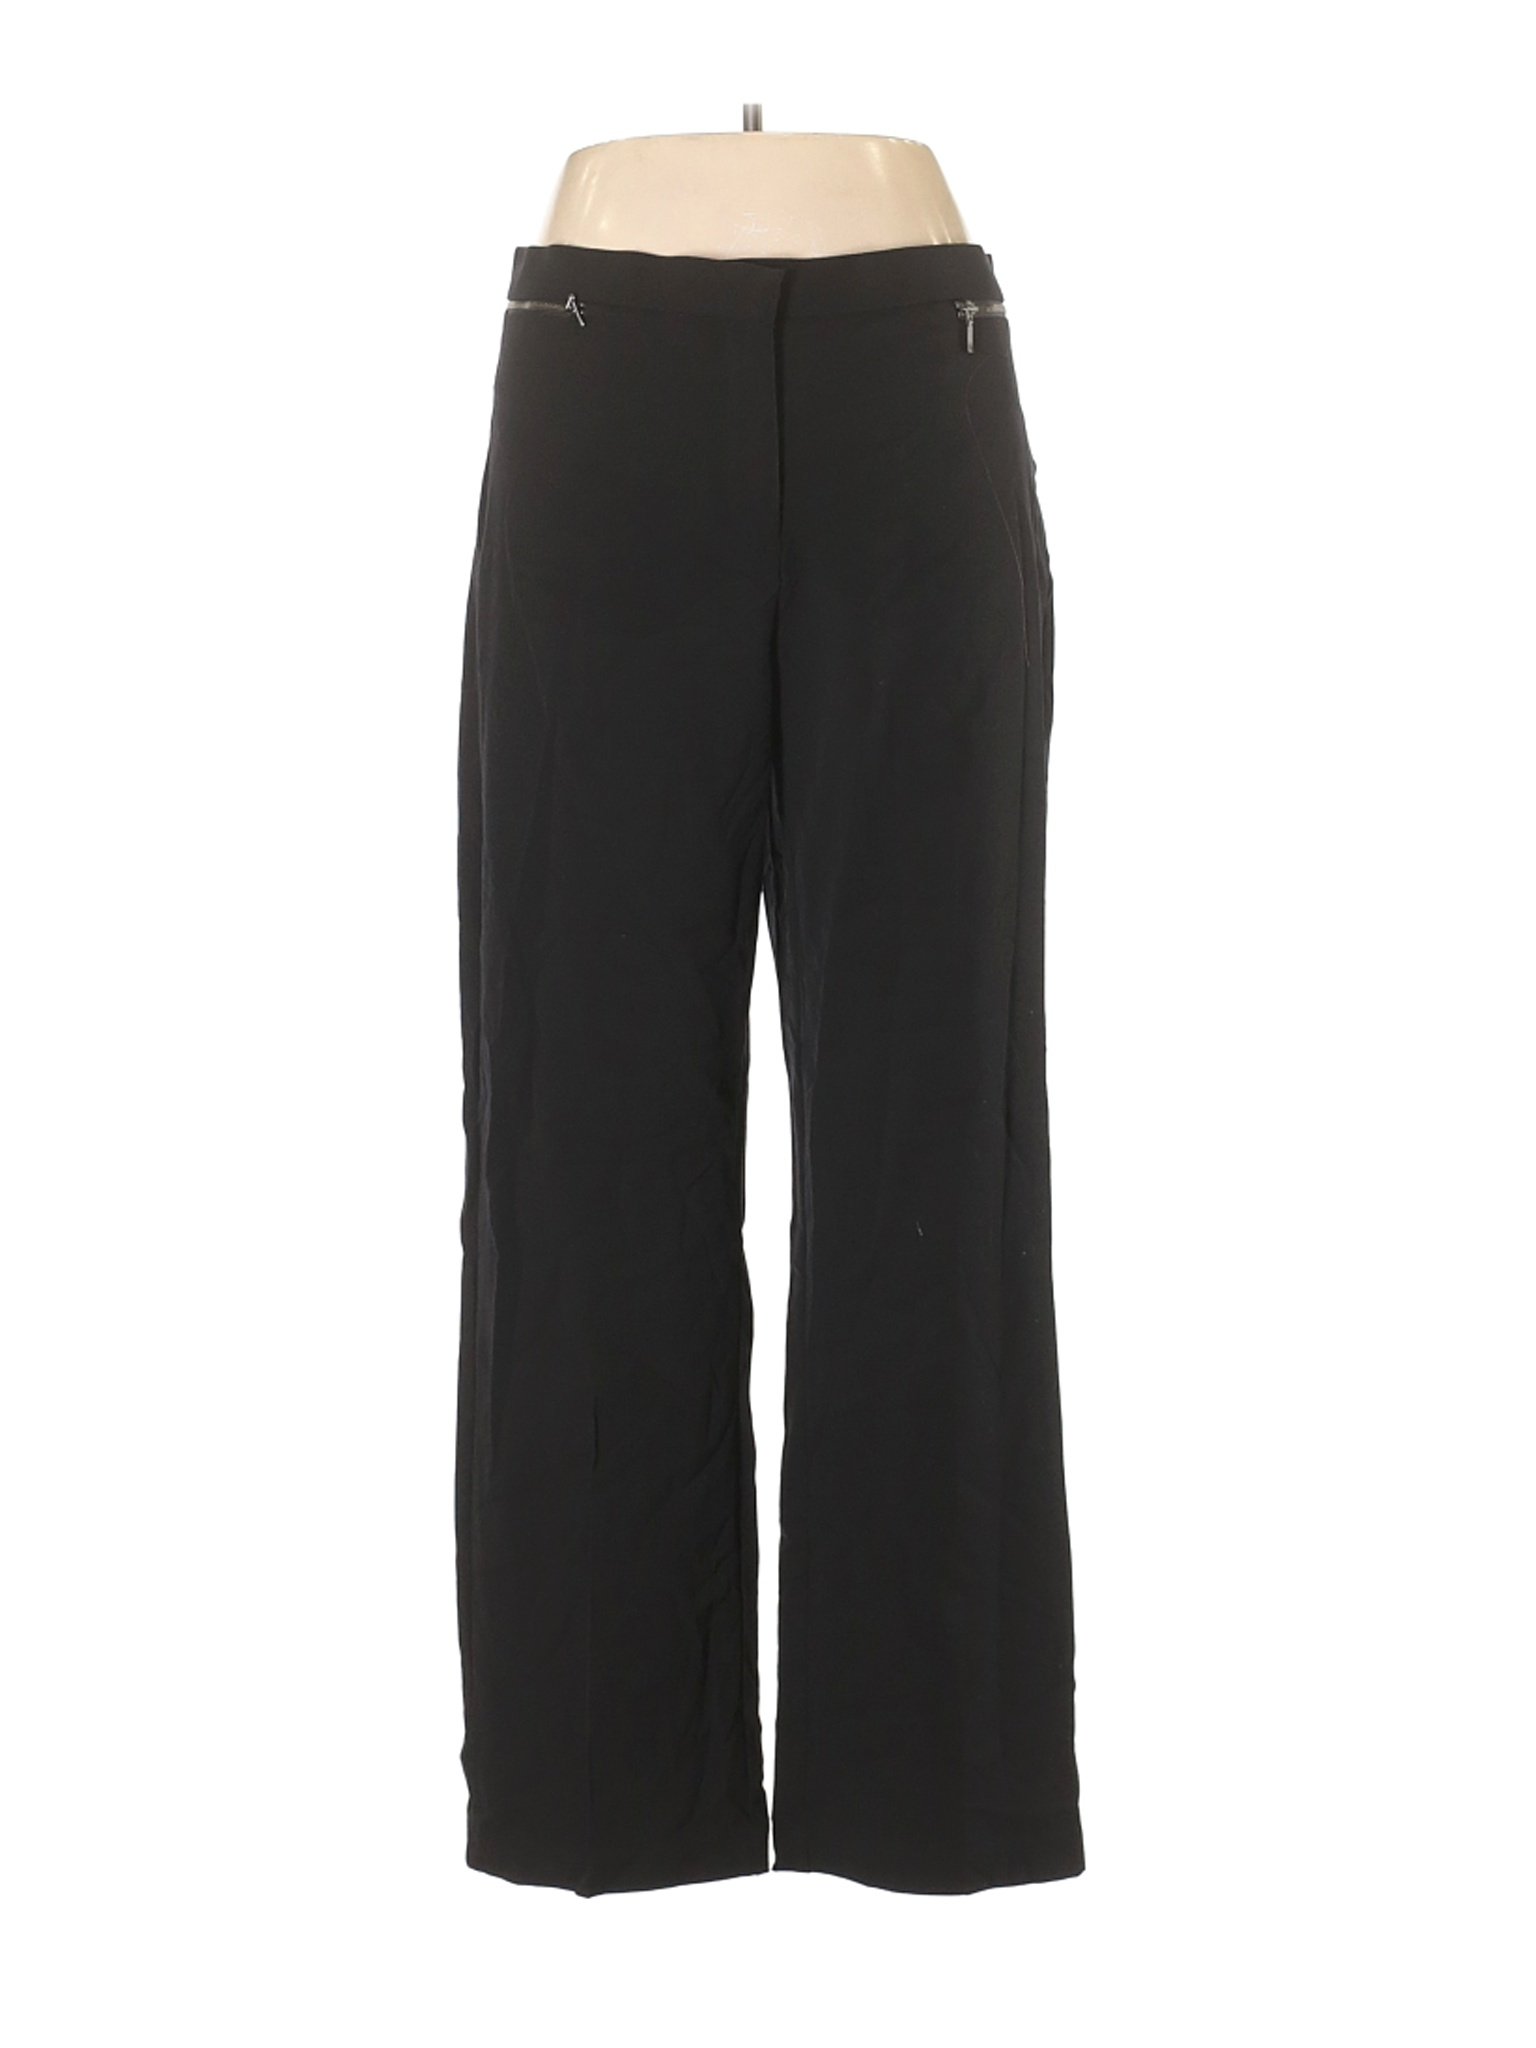 Sag Harbor Solid Black Dress Pants Size 12 - 80% off | thredUP